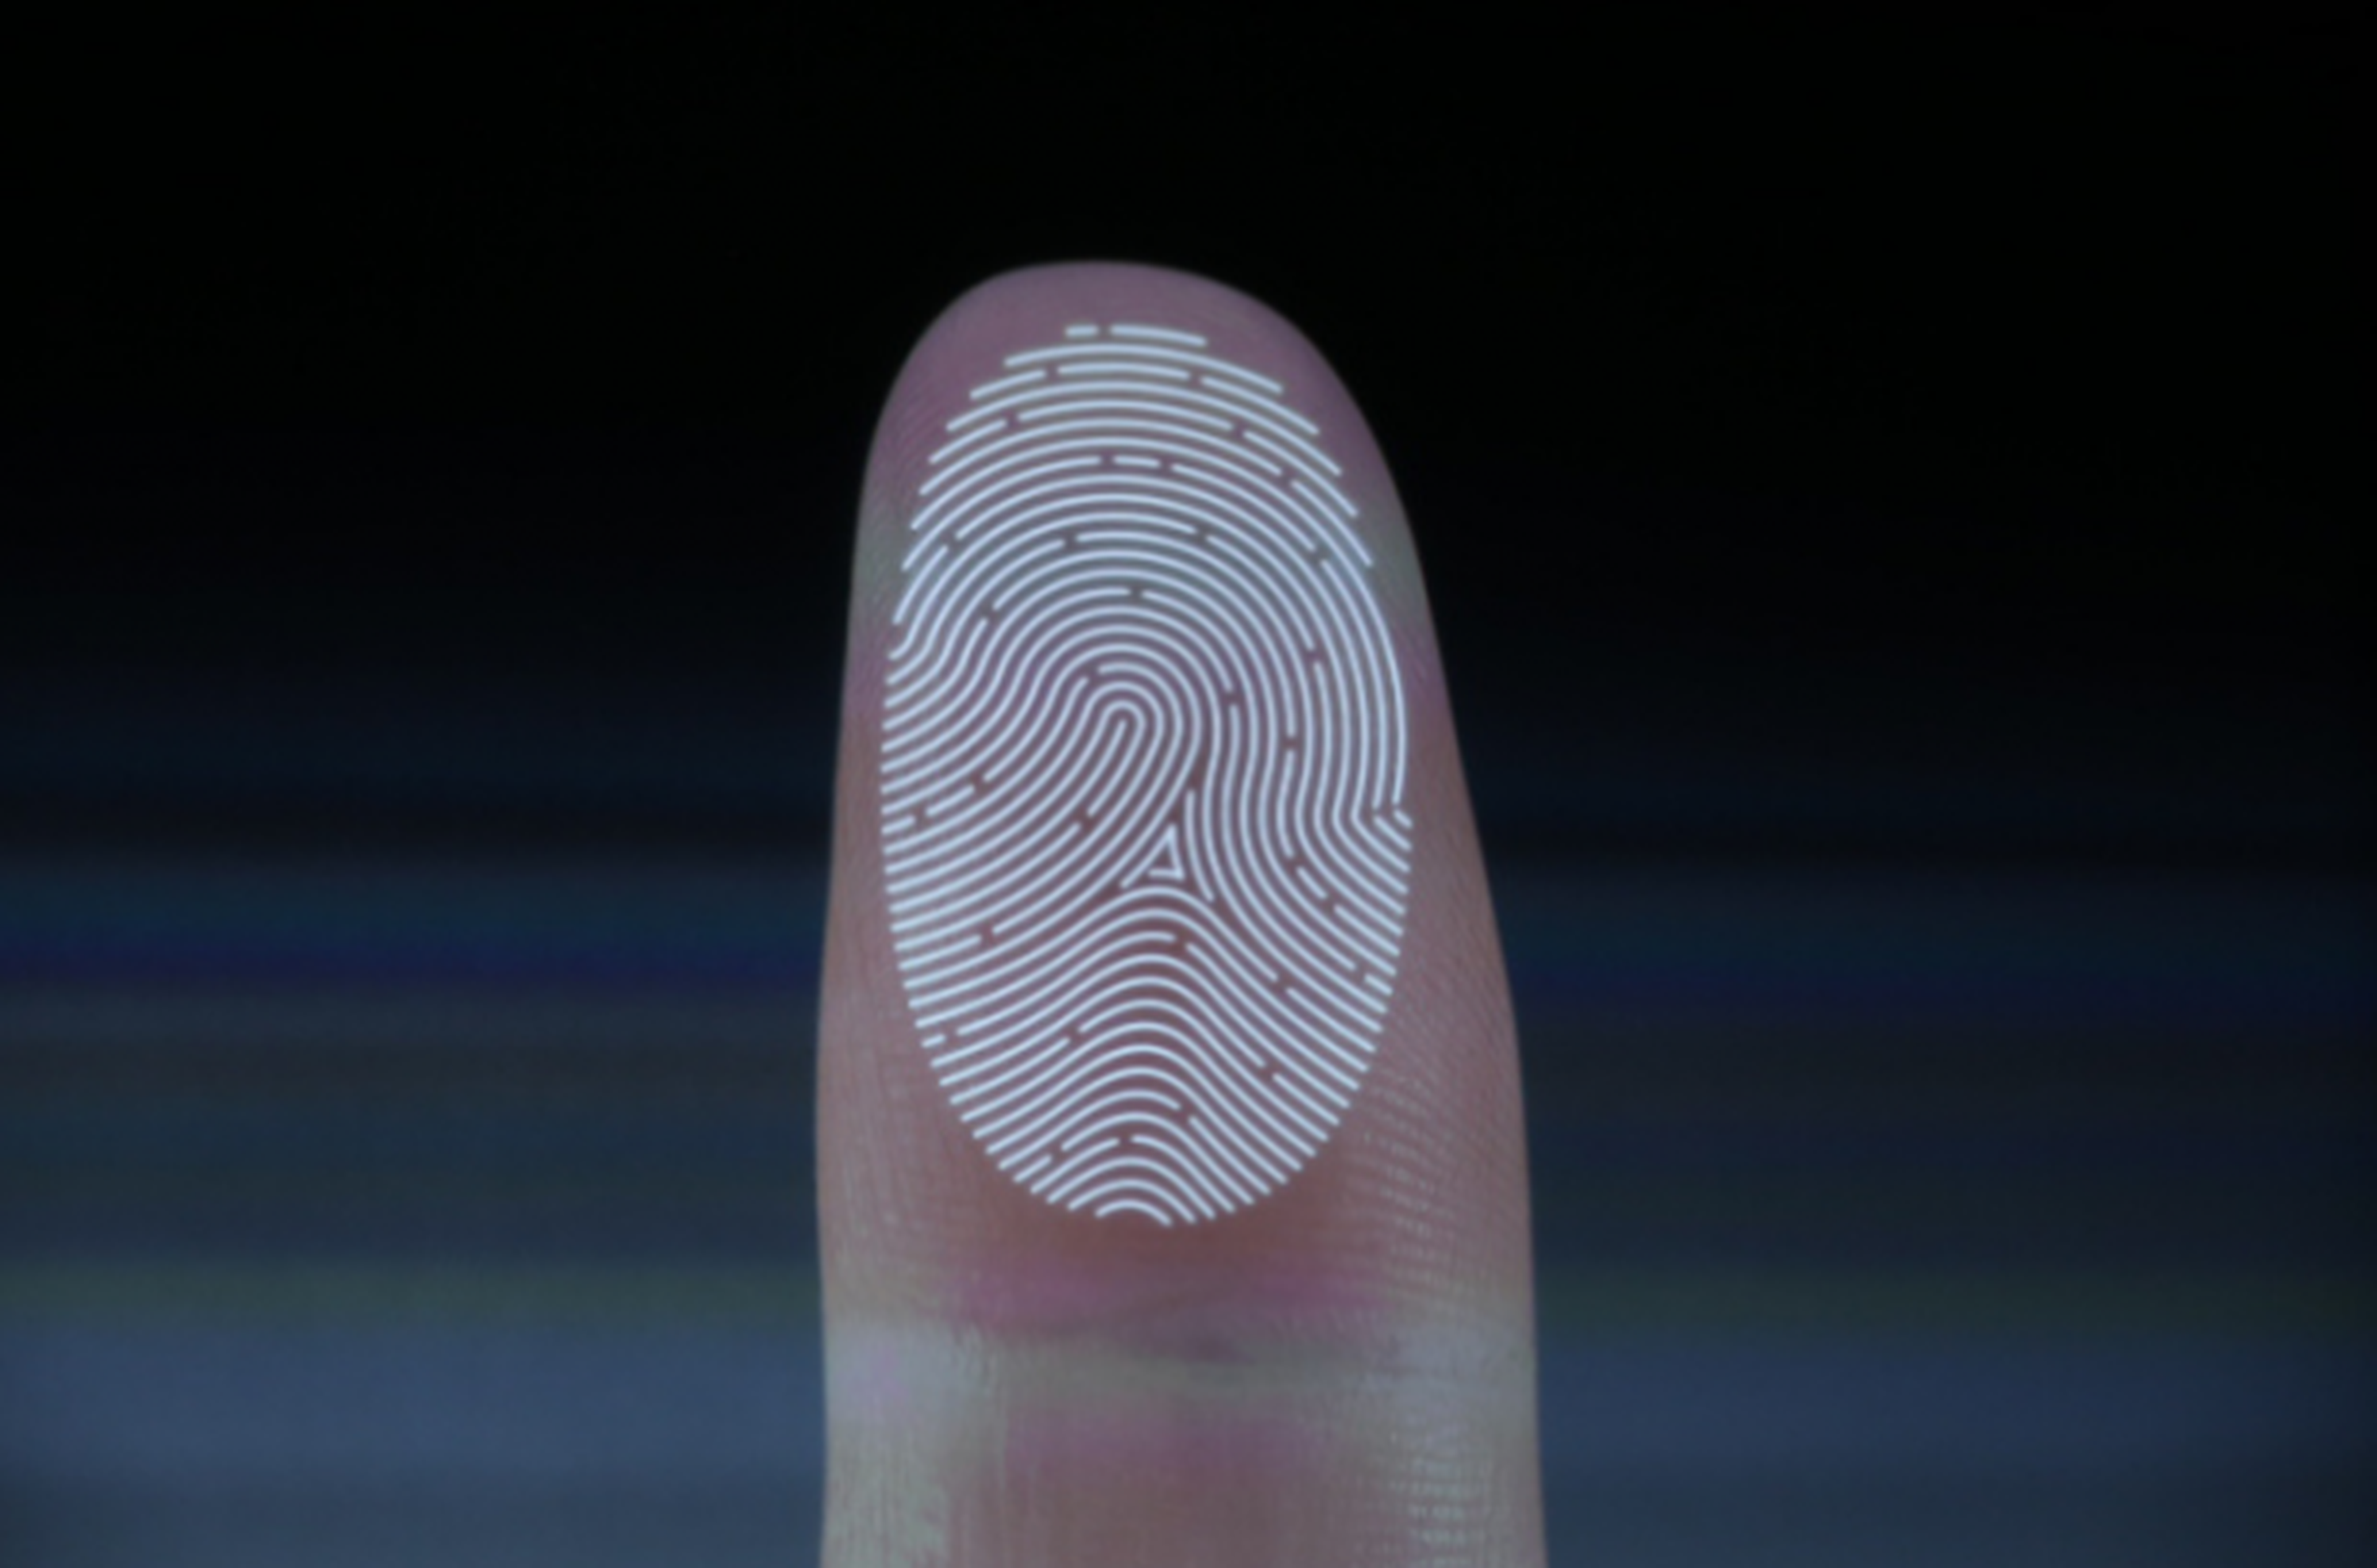 Sistema de identificación por huella dactilar, Touch ID